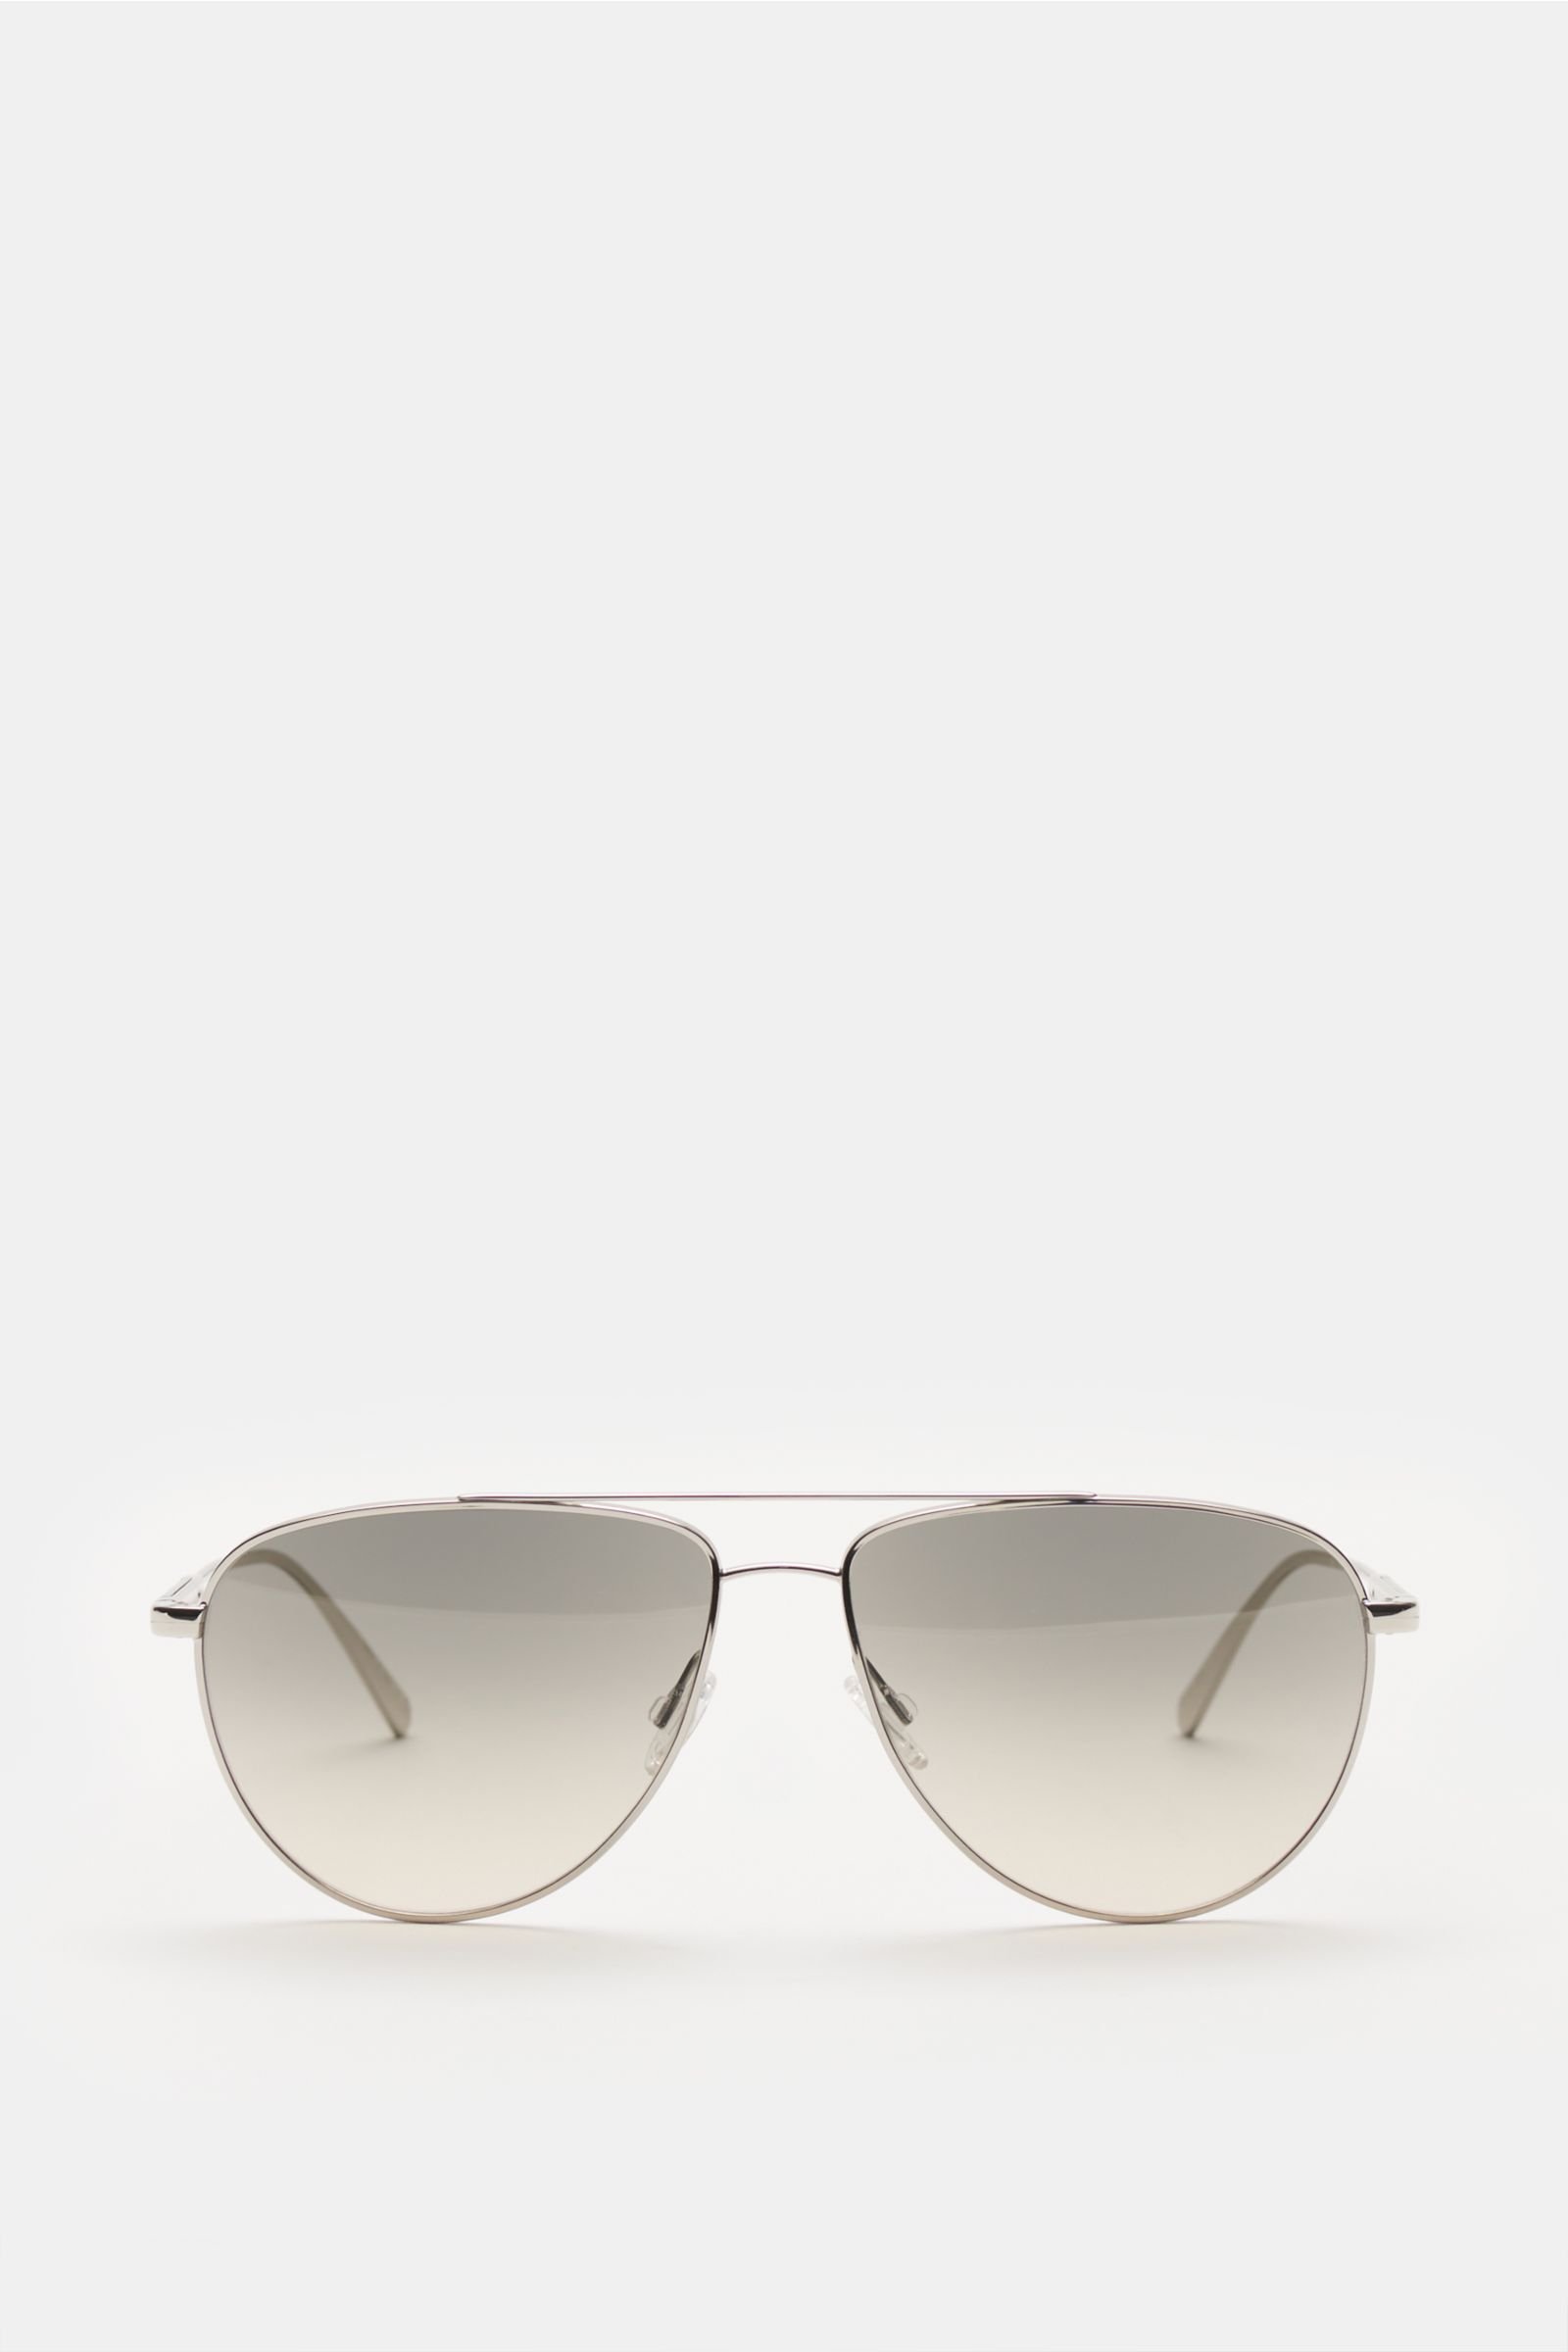 Sunglasses 'Disoriano' silver/grey